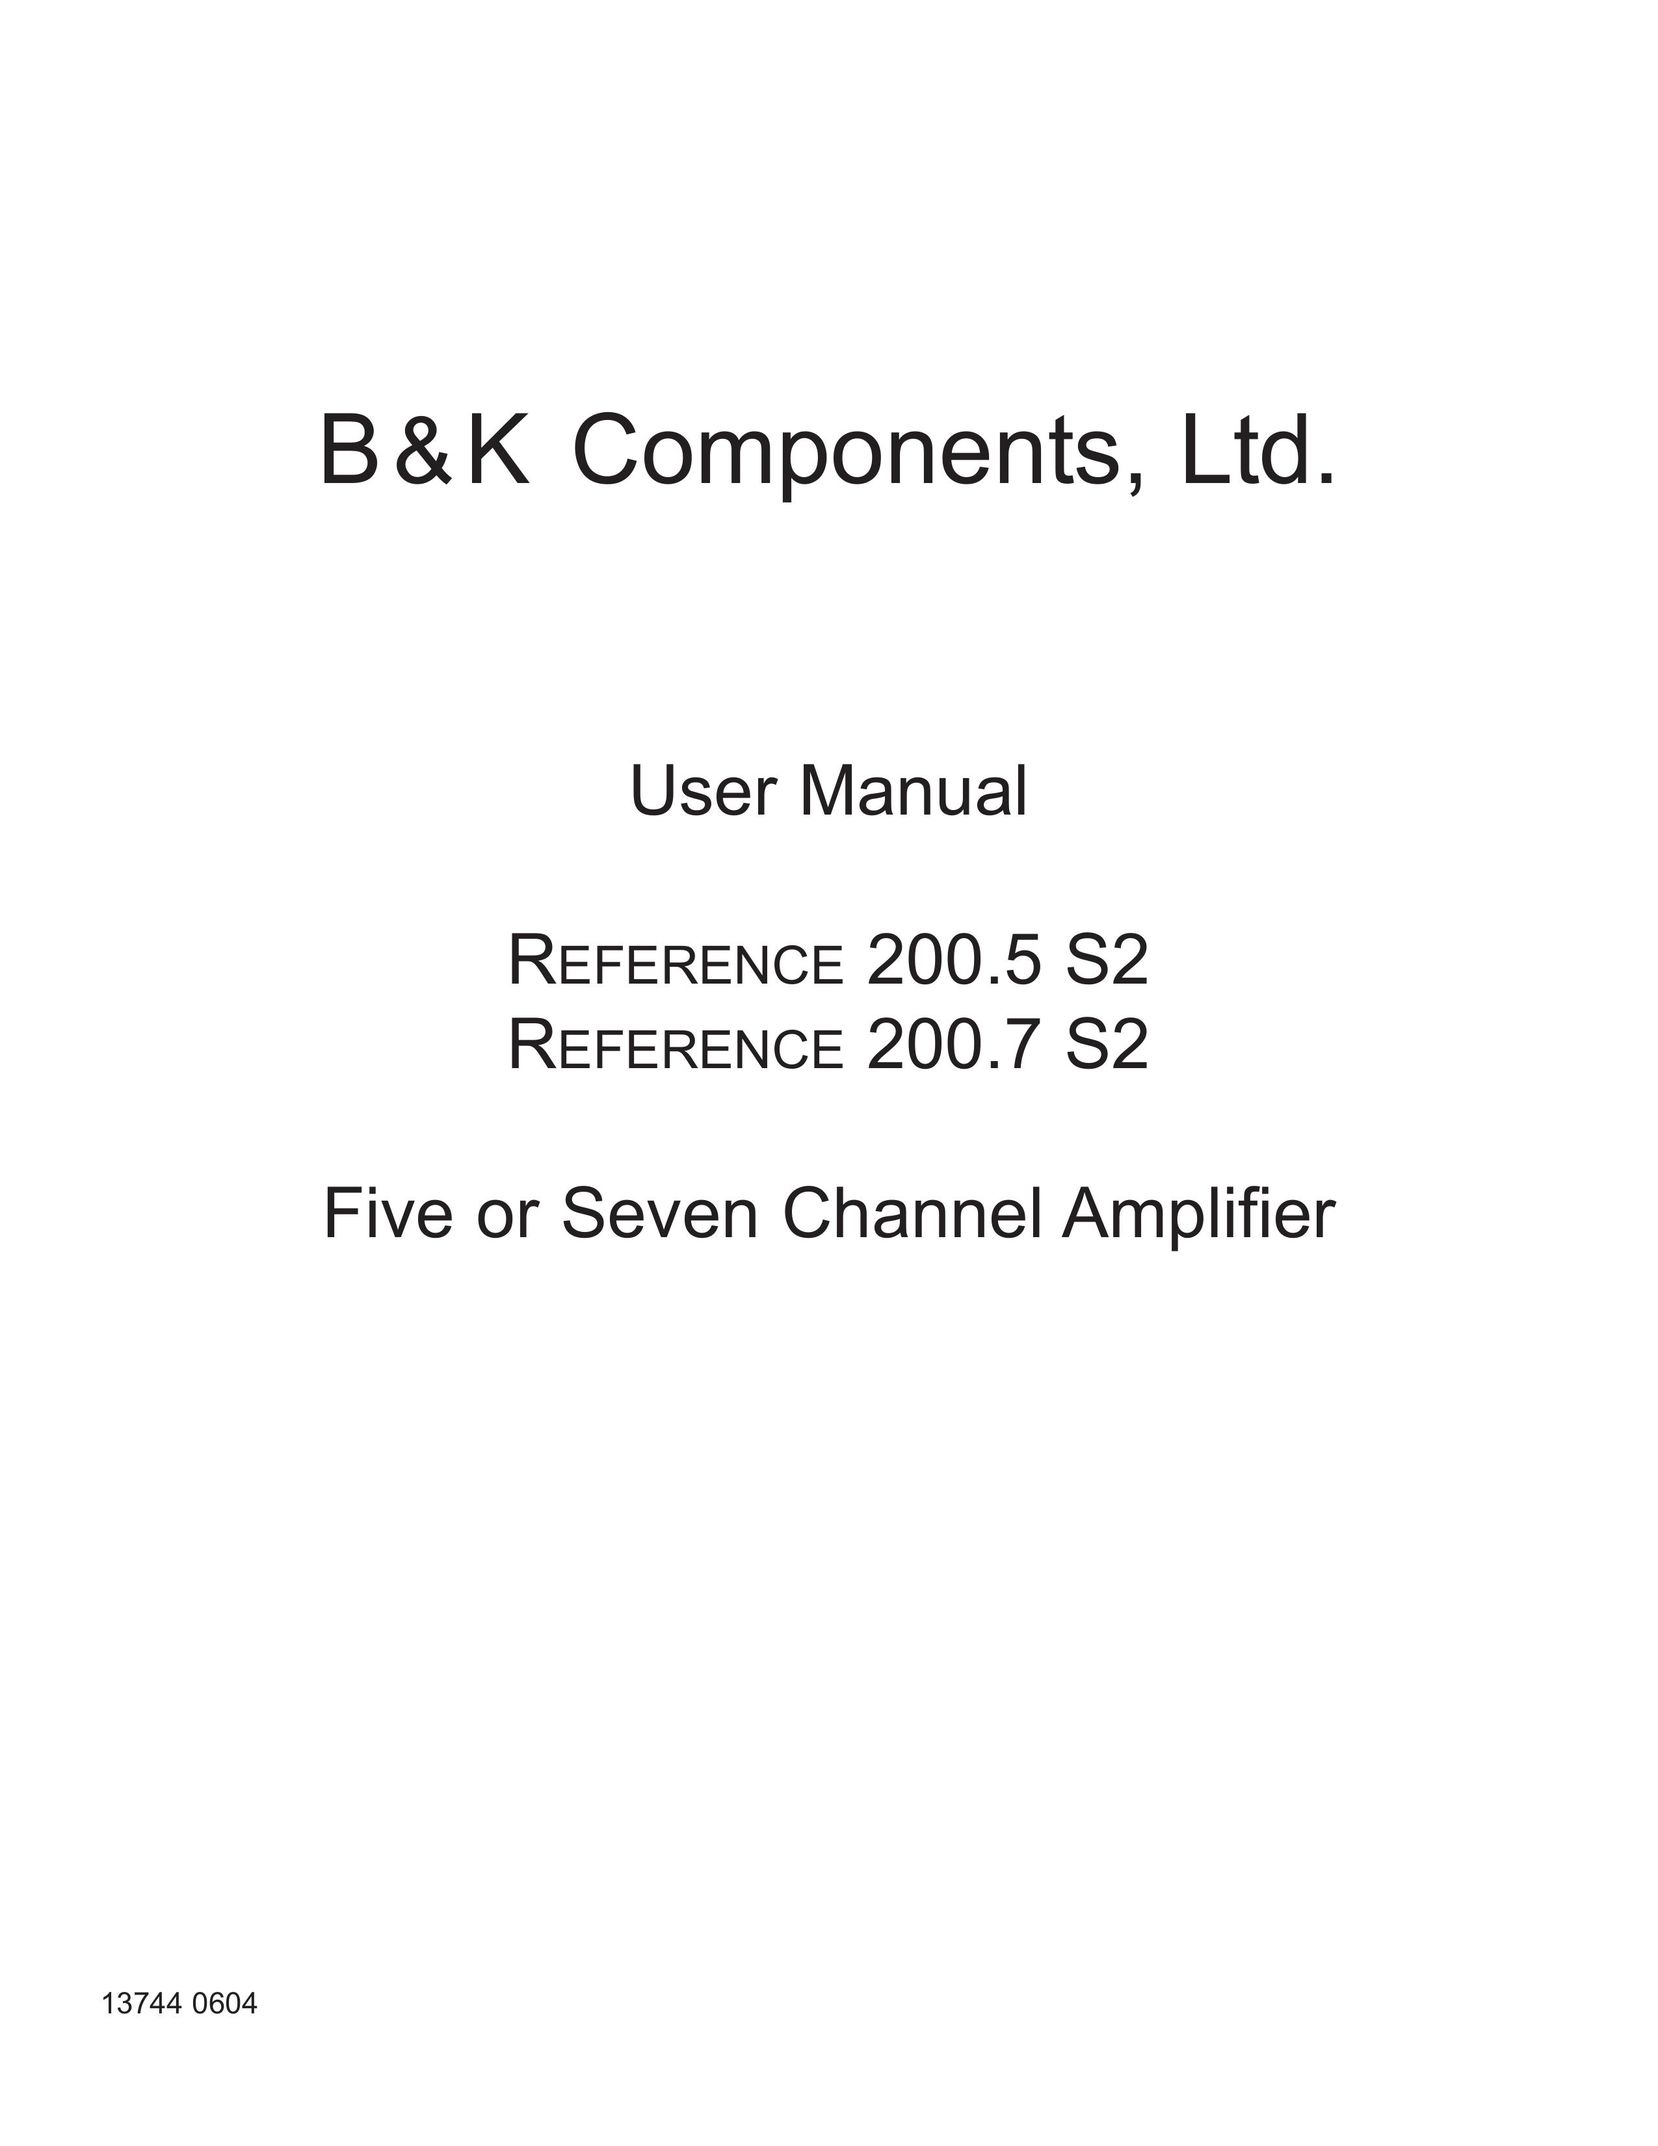 B&K 200.7 S2 Stereo Amplifier User Manual